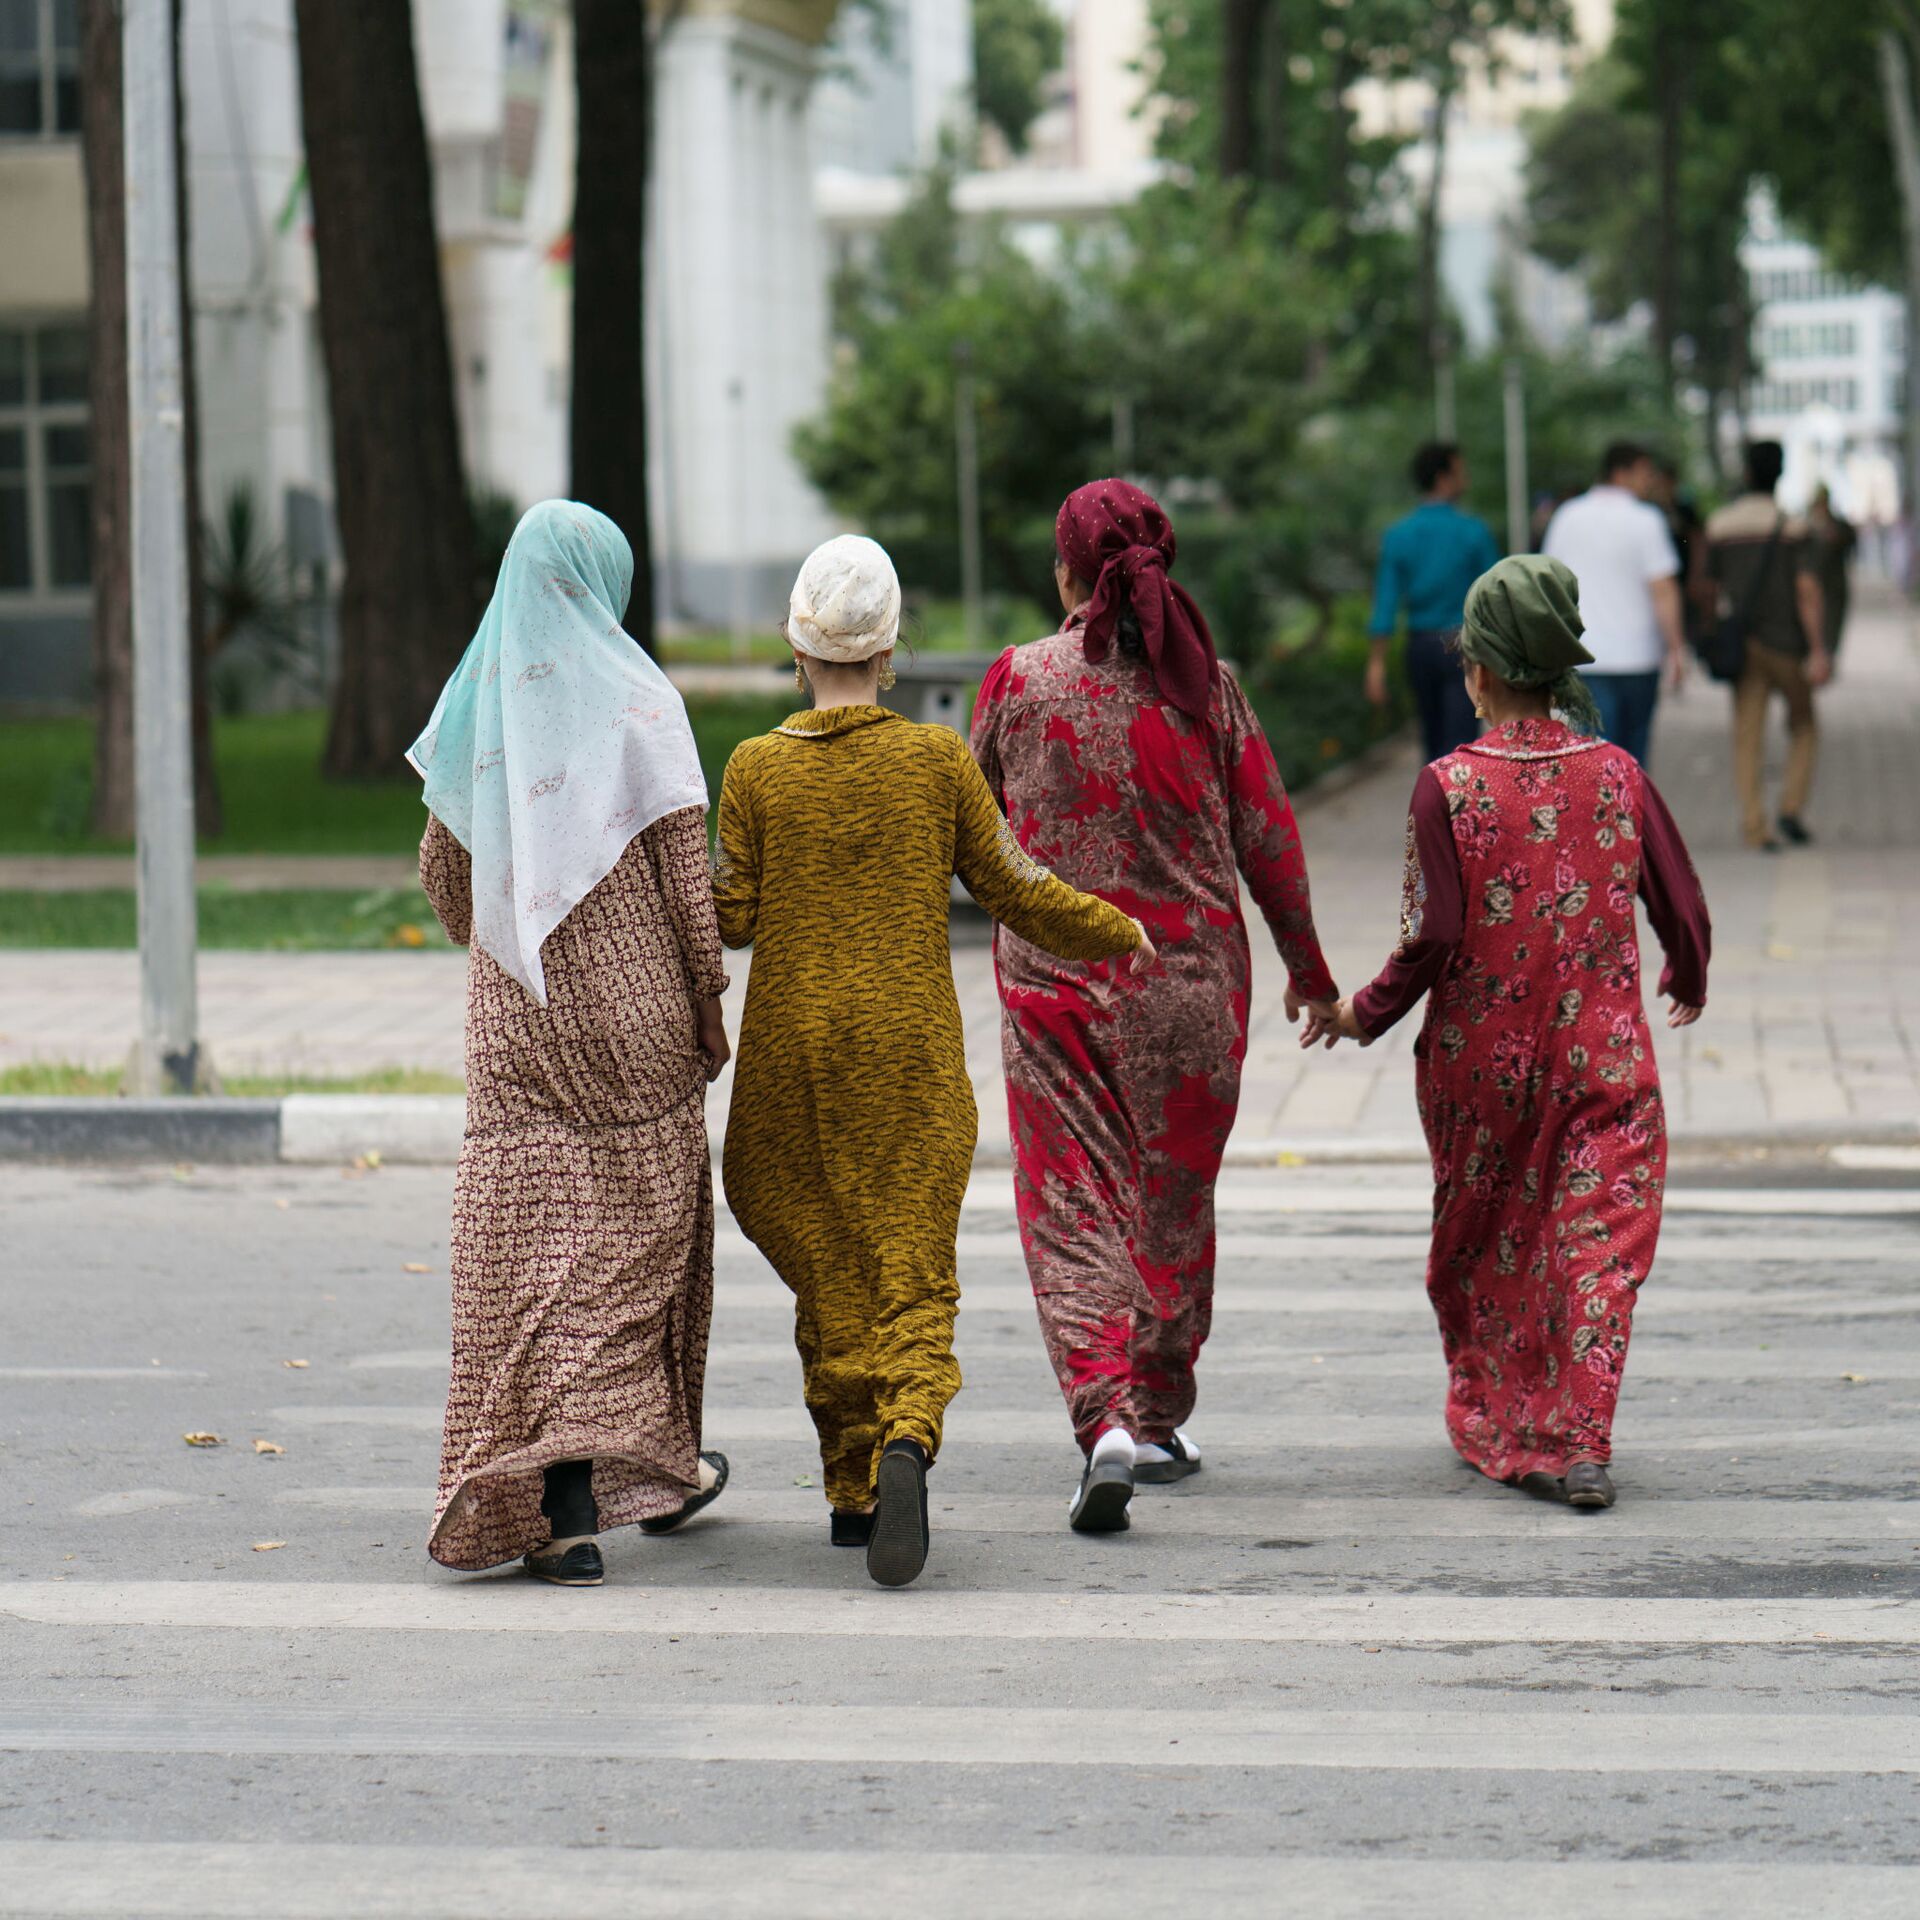 Таджикский муж жена. Таджикские женщины изменяют мужьям. Таджикские женщины без мужчин. Девушки в лосинах в Таджикистане в Душанбе. Таджикские женщины изменщицы.